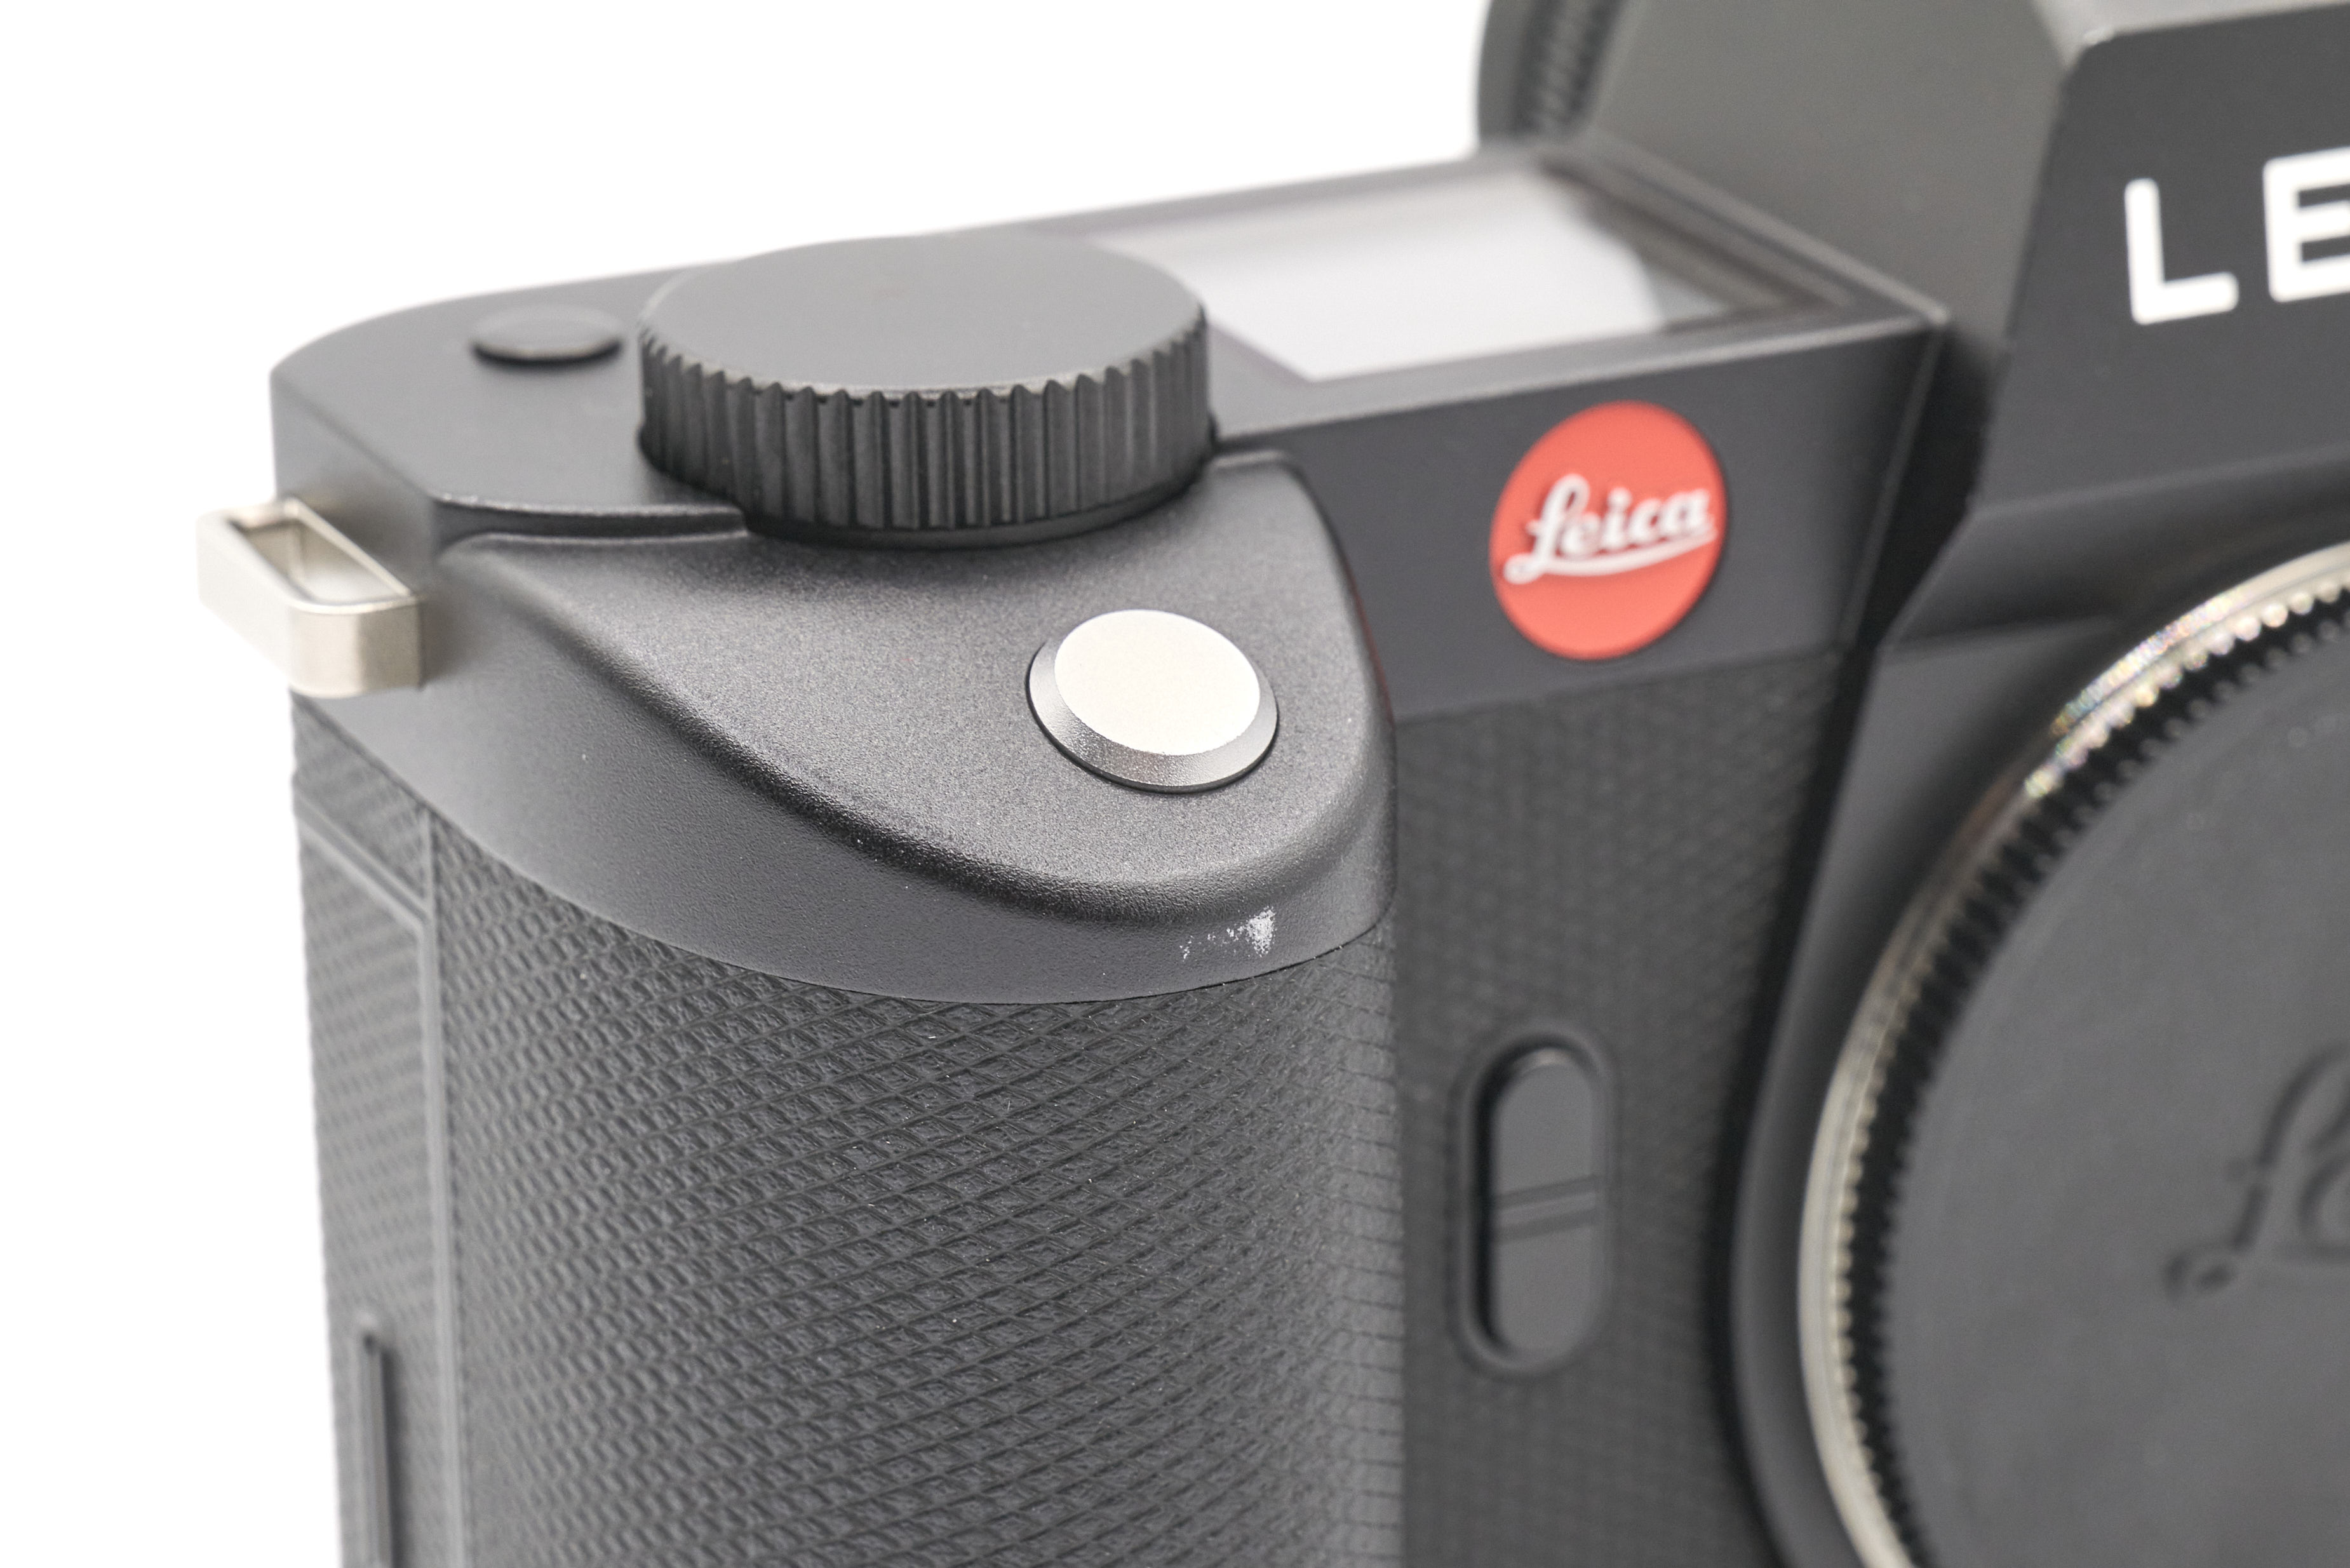 Leica SL2 10854